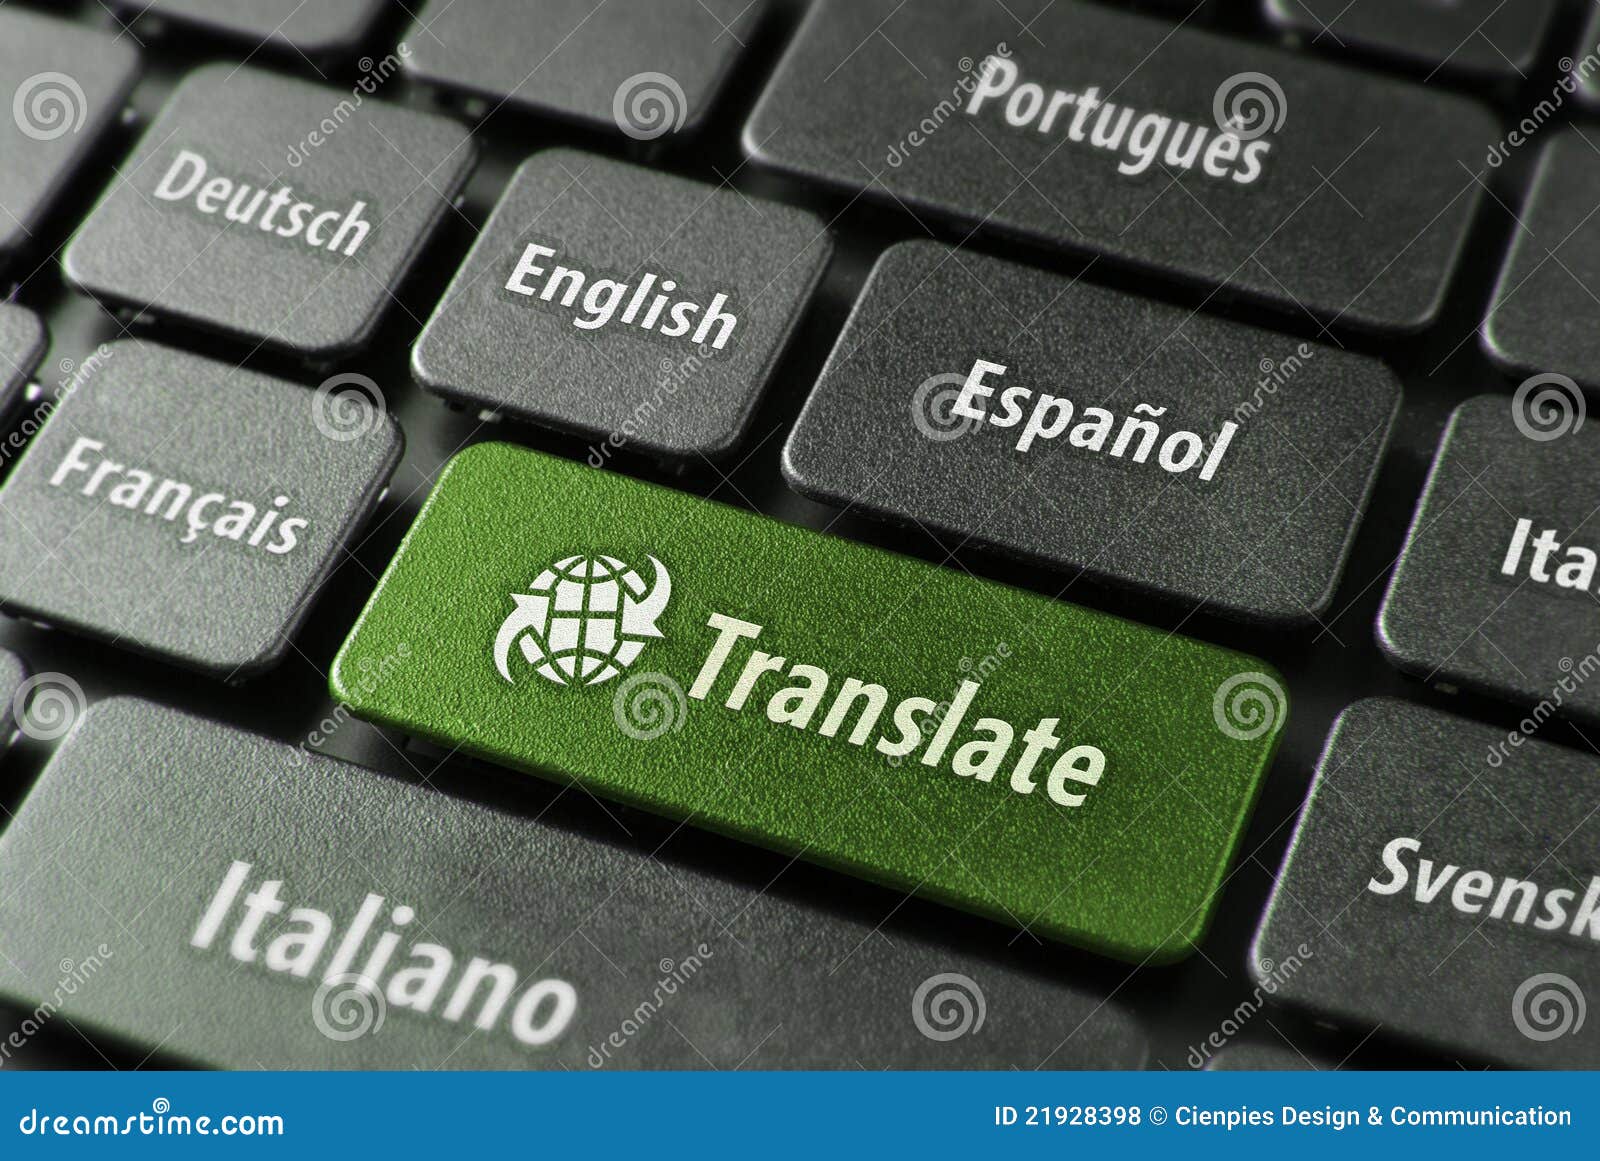 online translation service concept